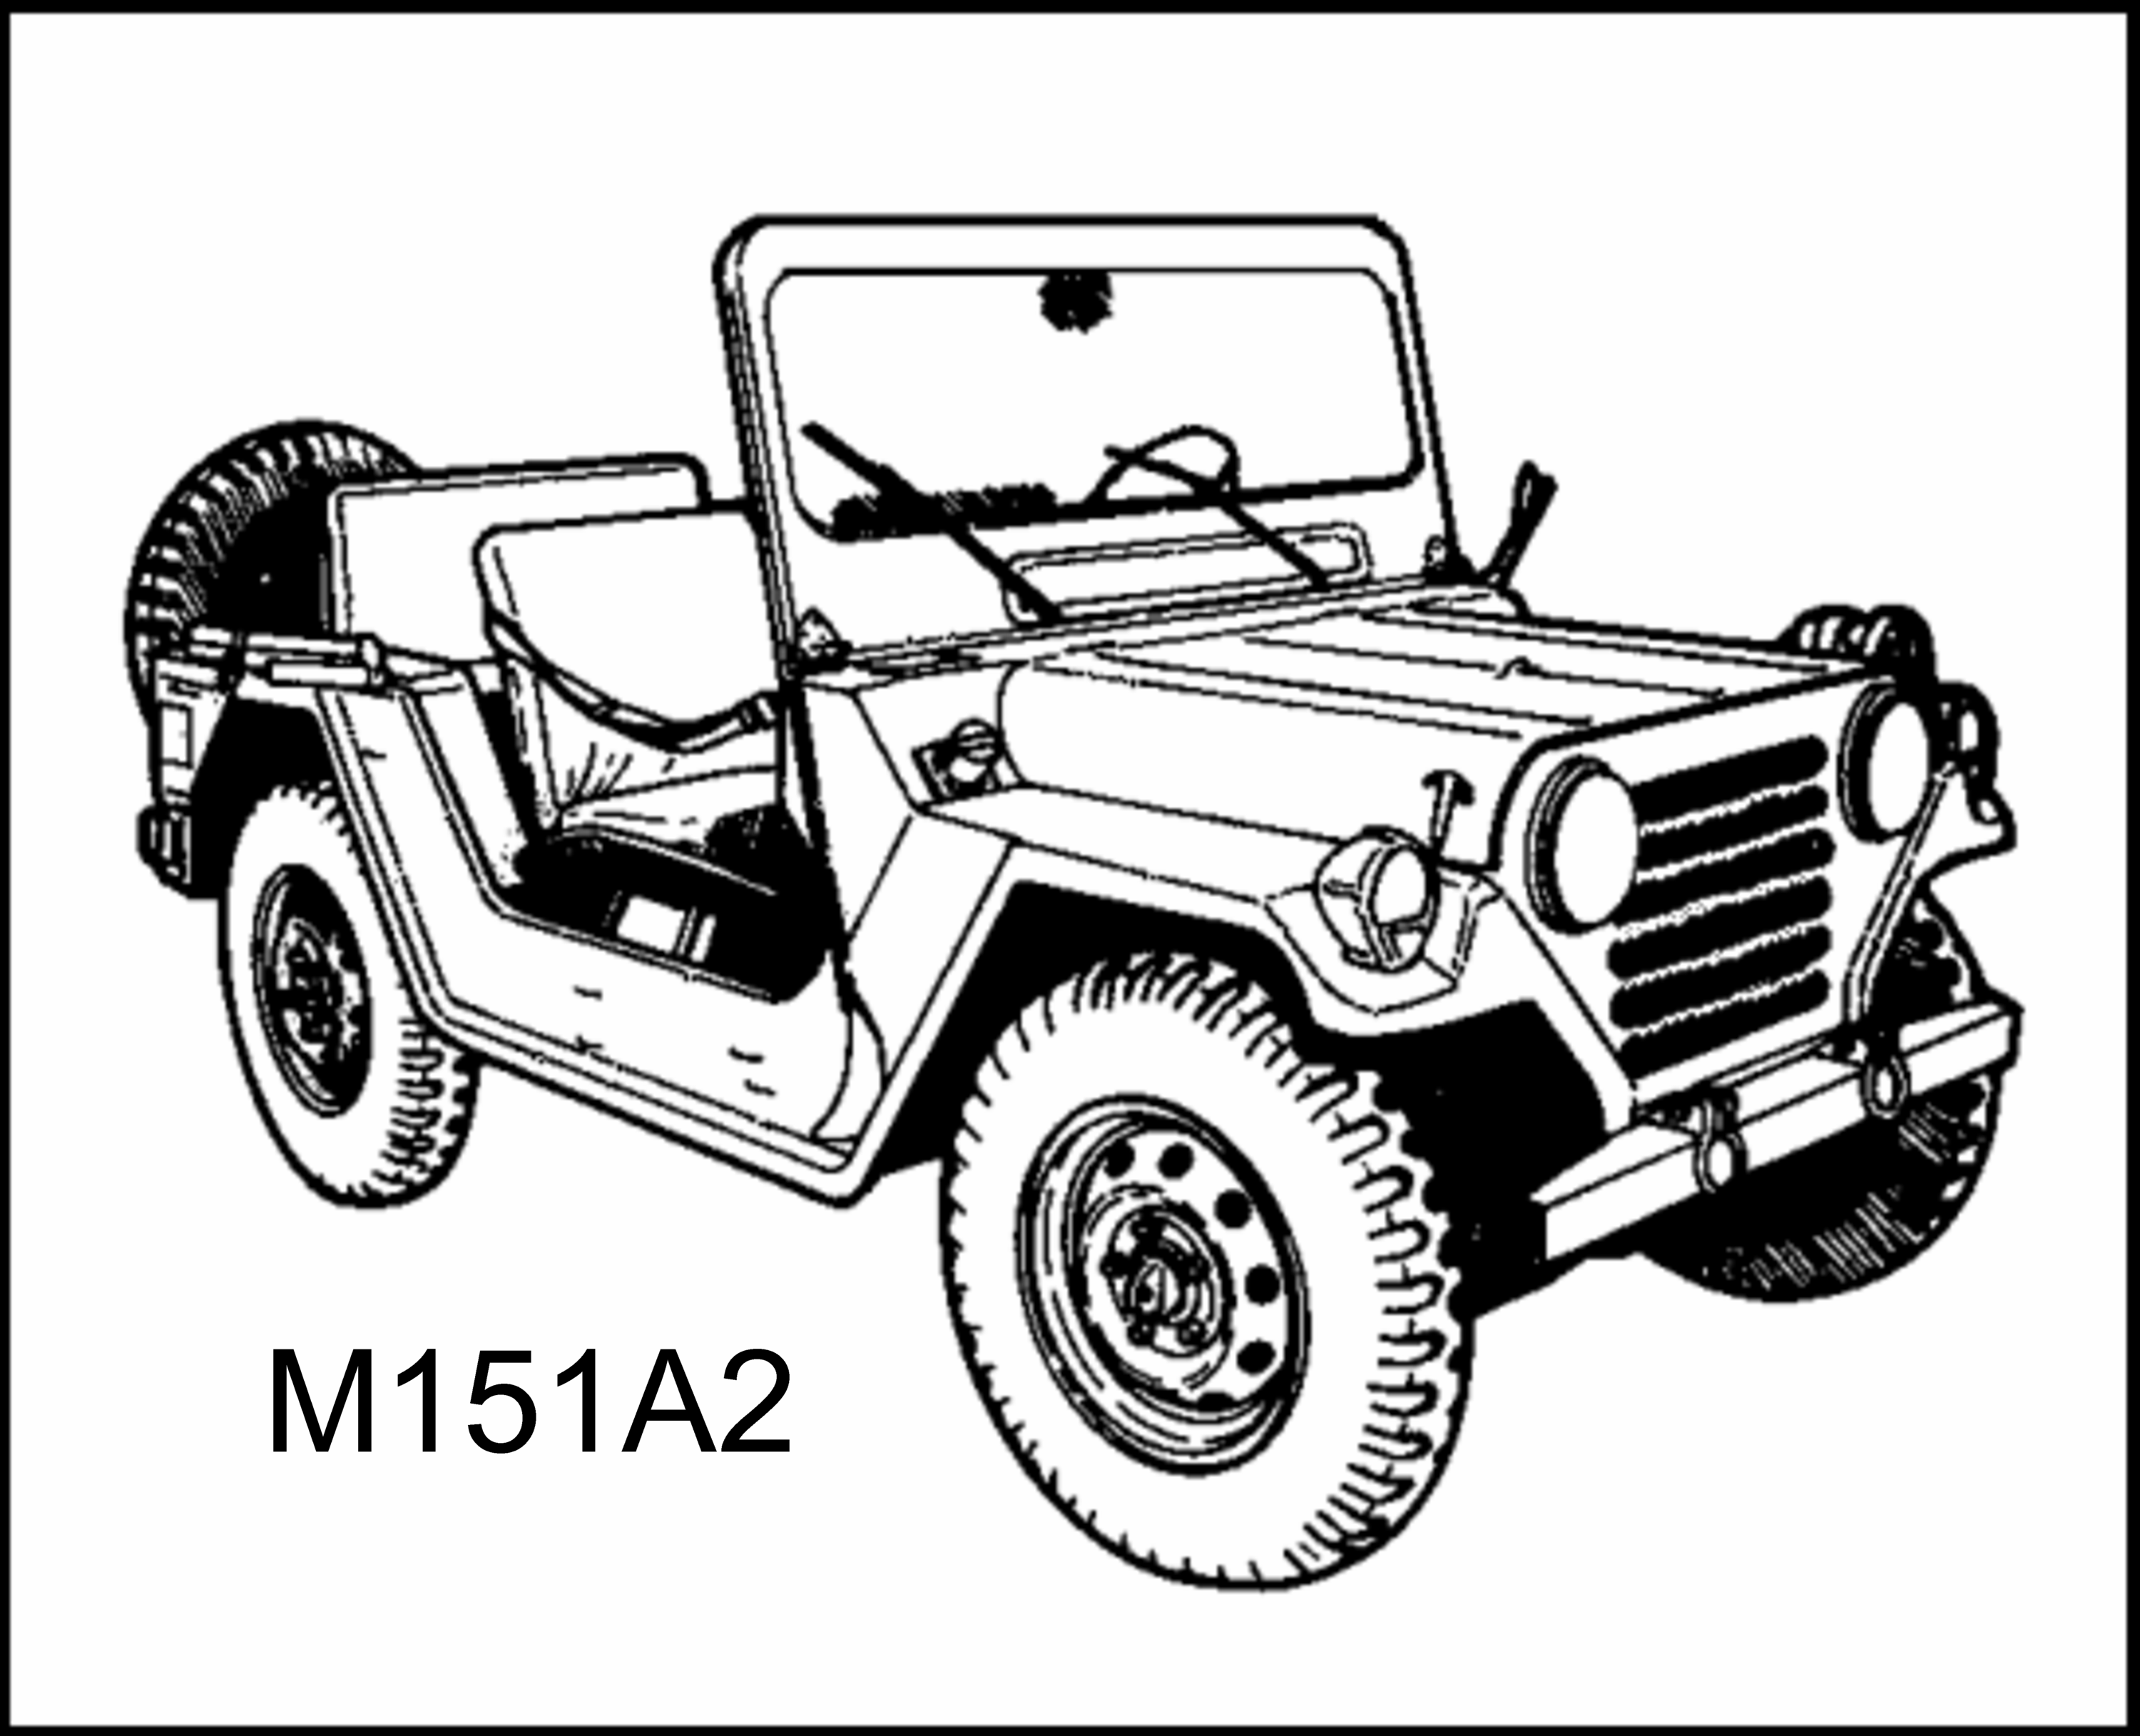 M151A2